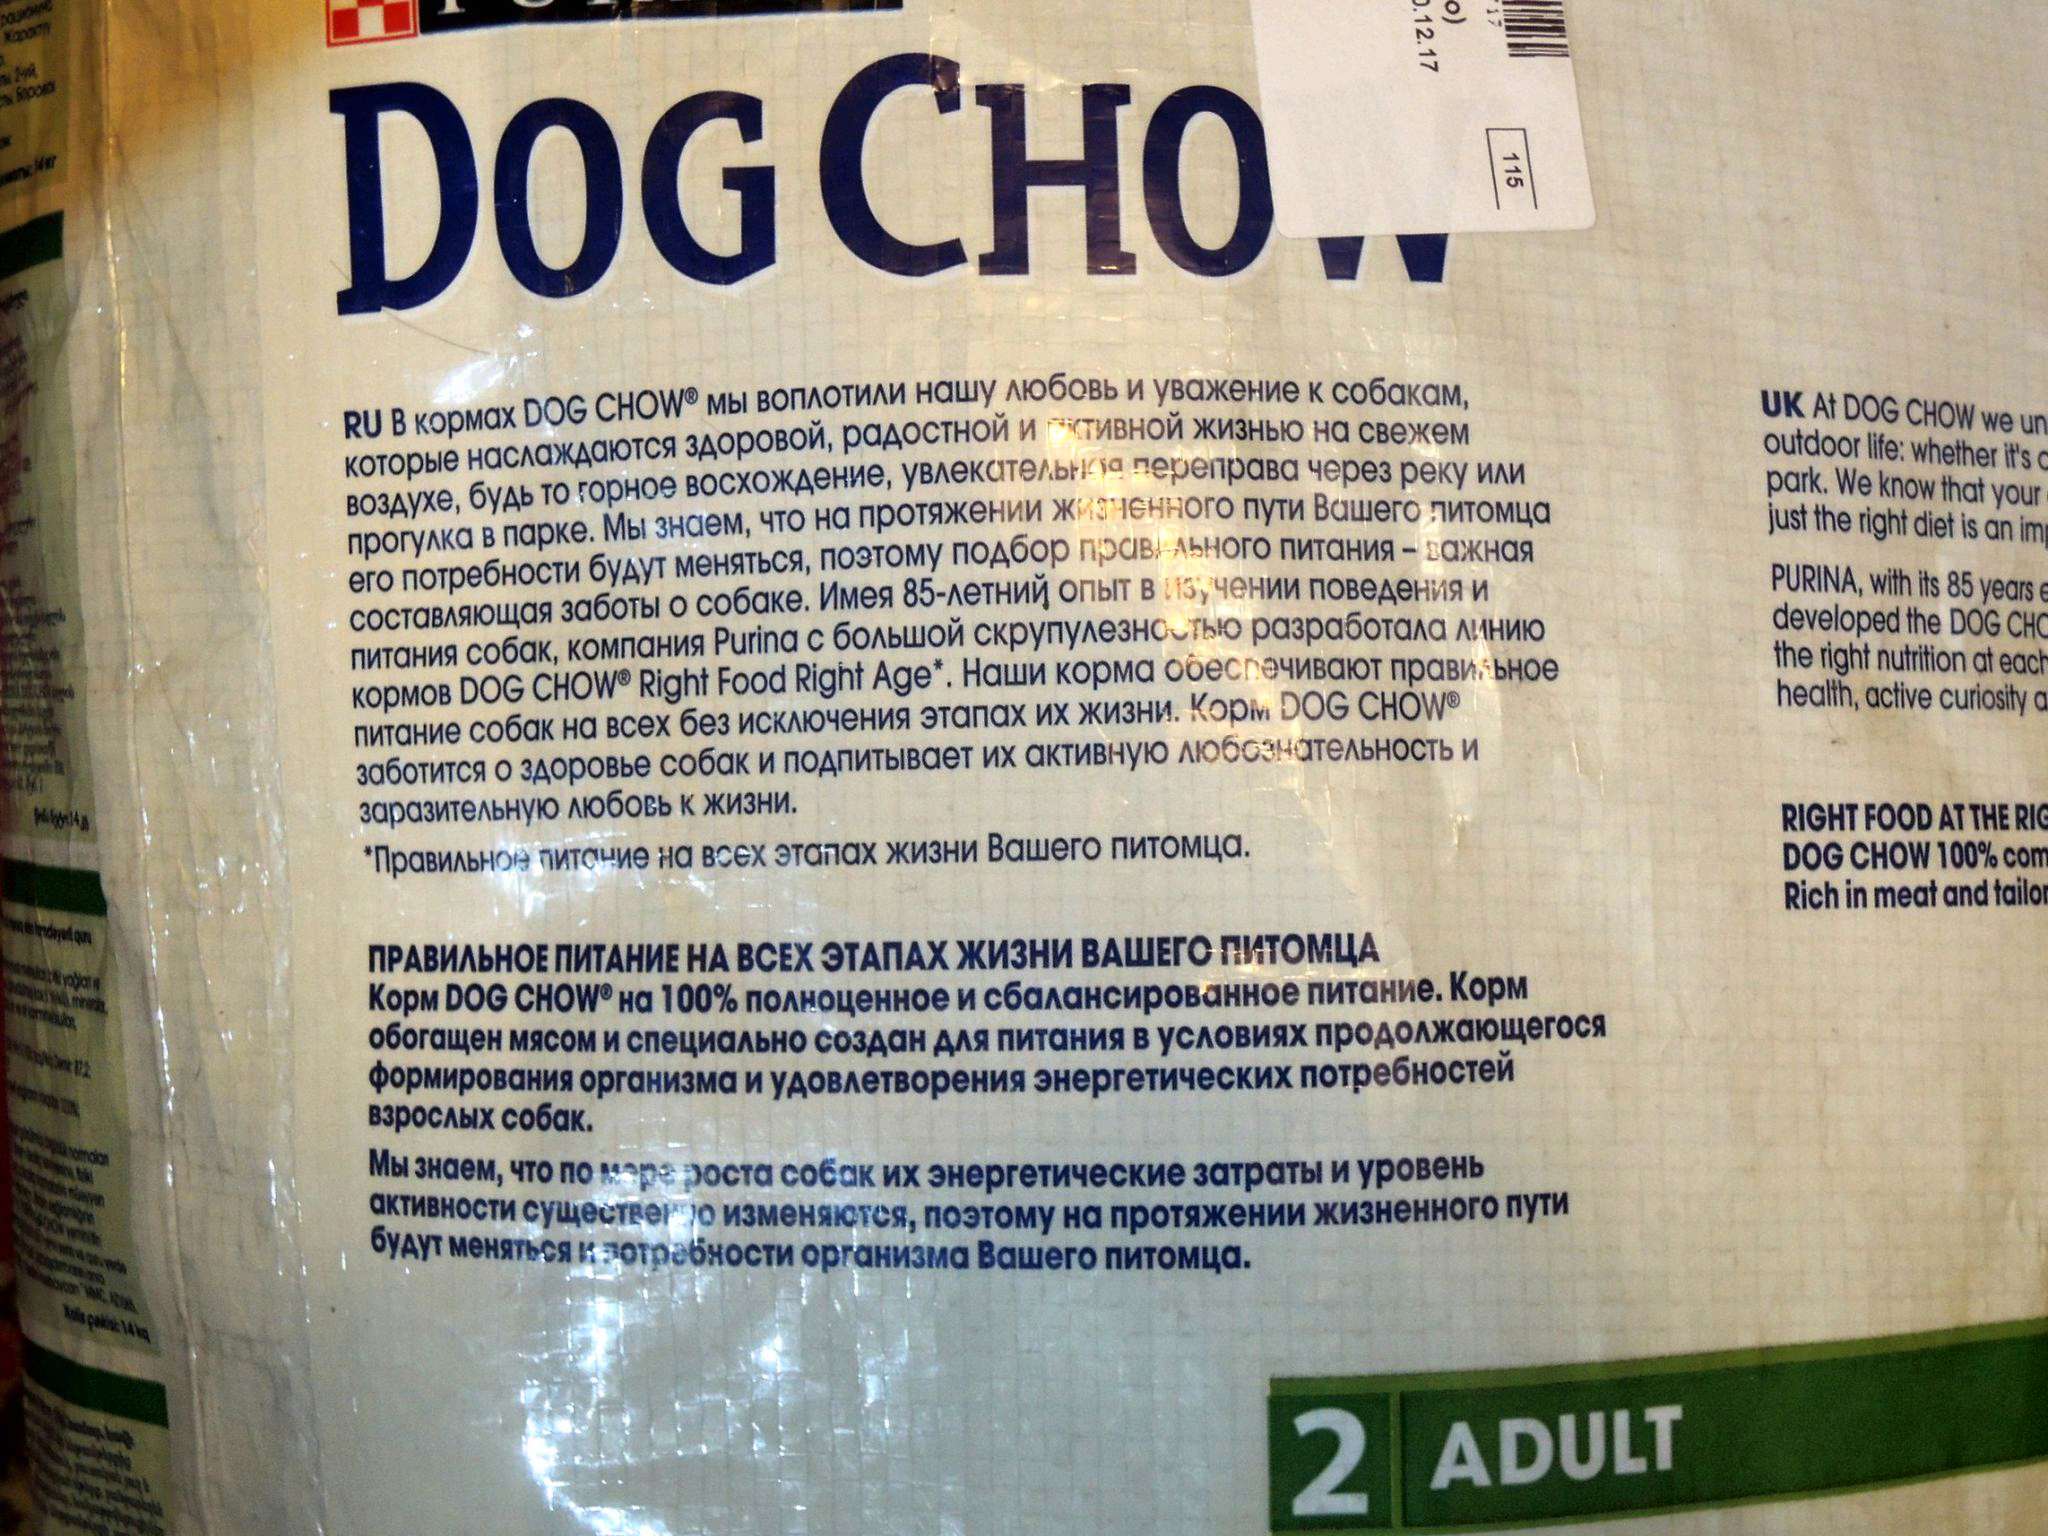 Корм для собак 14кг. Дог чау корм для собак 14 кг. Корм Dog Chow состав. Состав корма дог чау для собак. Dog Chow корм для собак состав.